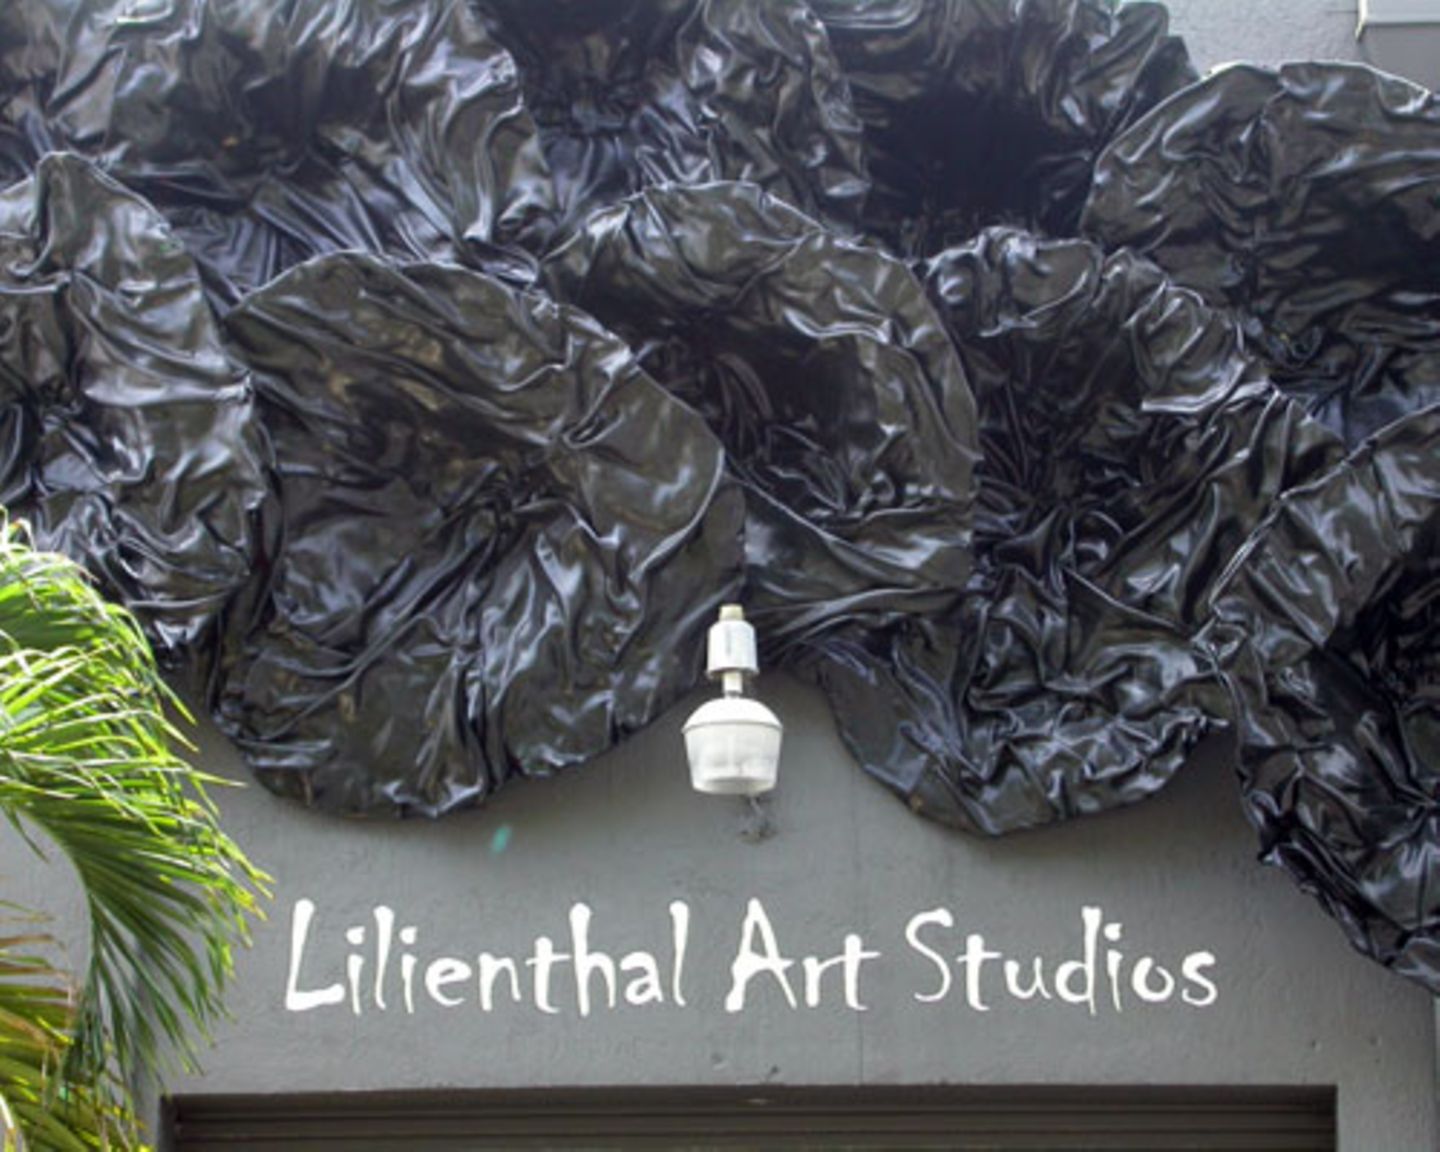 Aber wer in Miami nur Partys feiert, verpasst etwas: Die Kunst- und Kulturszene blüht – nicht erst seit sich ein Ableger der Kunstmesse „Art Basel“ hier angesiedelt hat. Hübsch anzusehen sind auch kleinere Einrichtungen wie das Studio der Künstlerin Ilana Lilienthal.